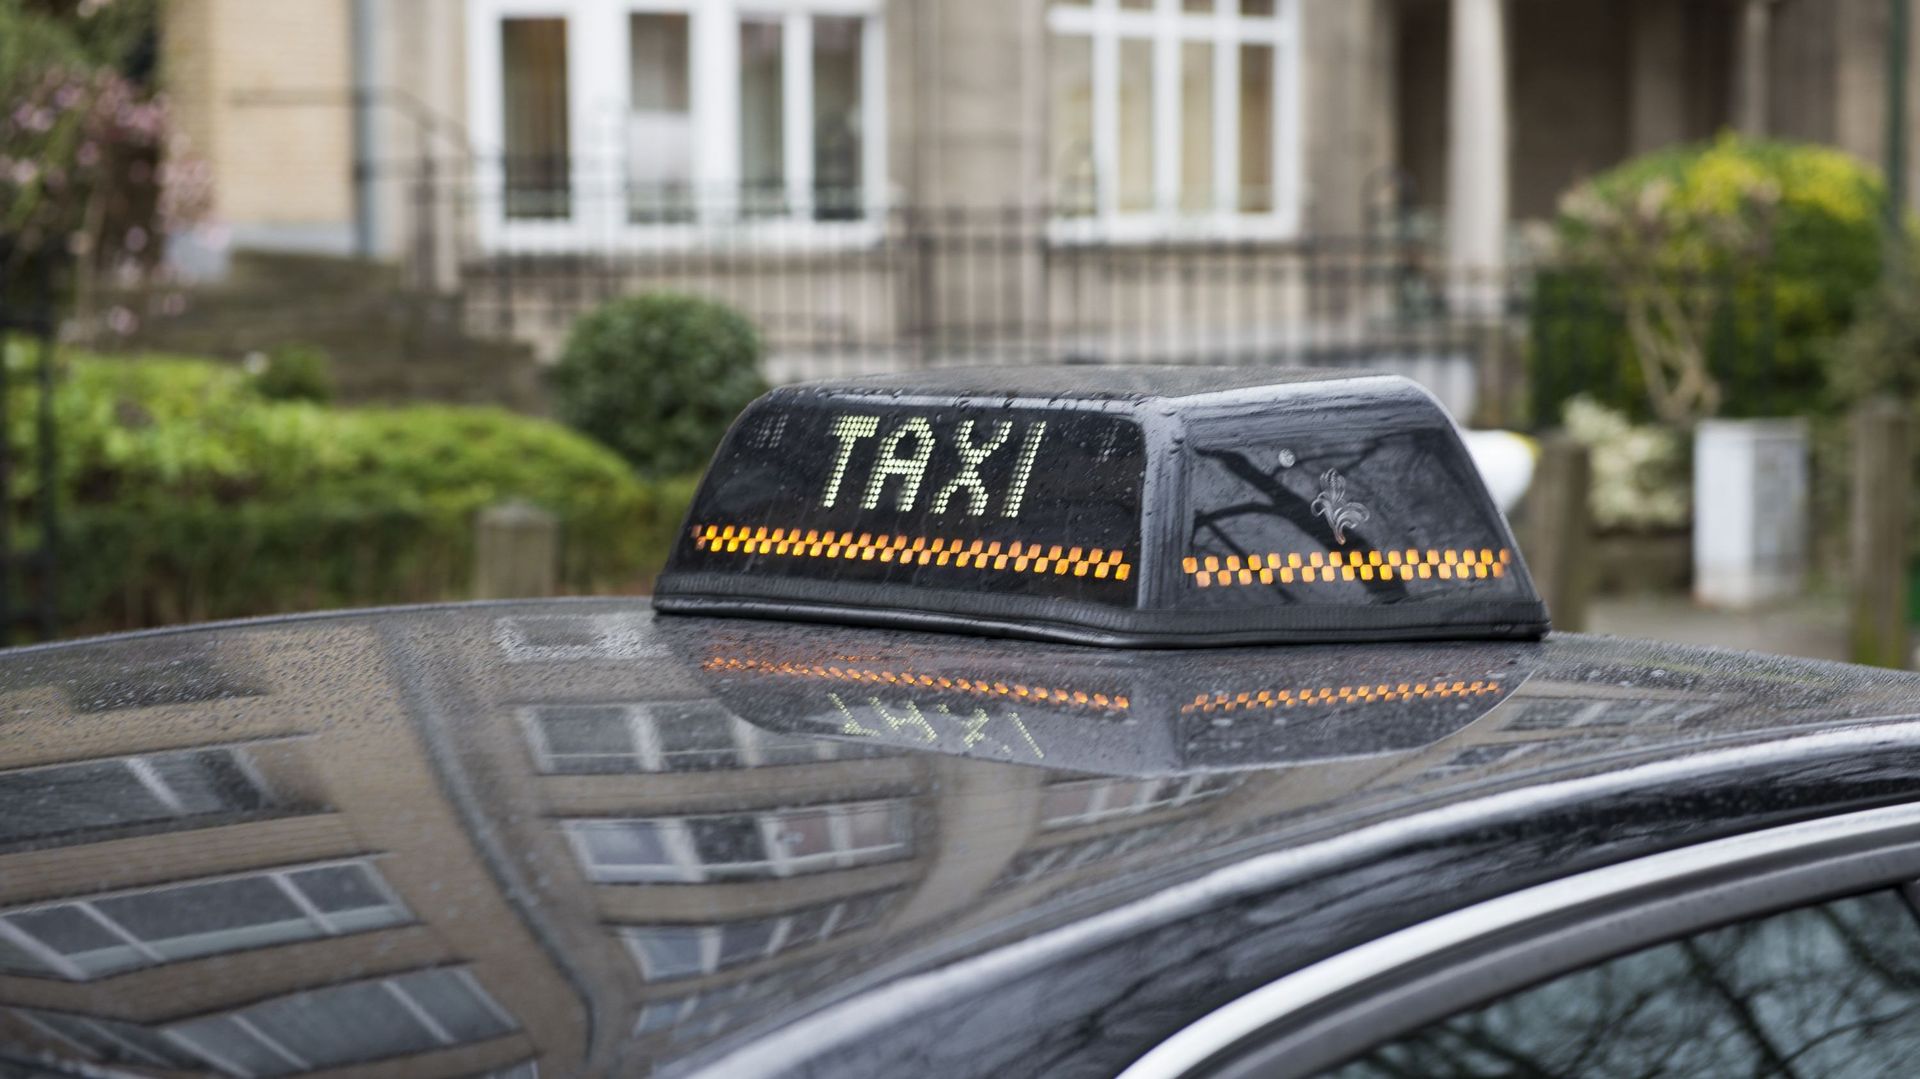 Semaine de la Mobilité - Lancement de l'application Handycab pour centraliser les taxis PMR de Bruxelles